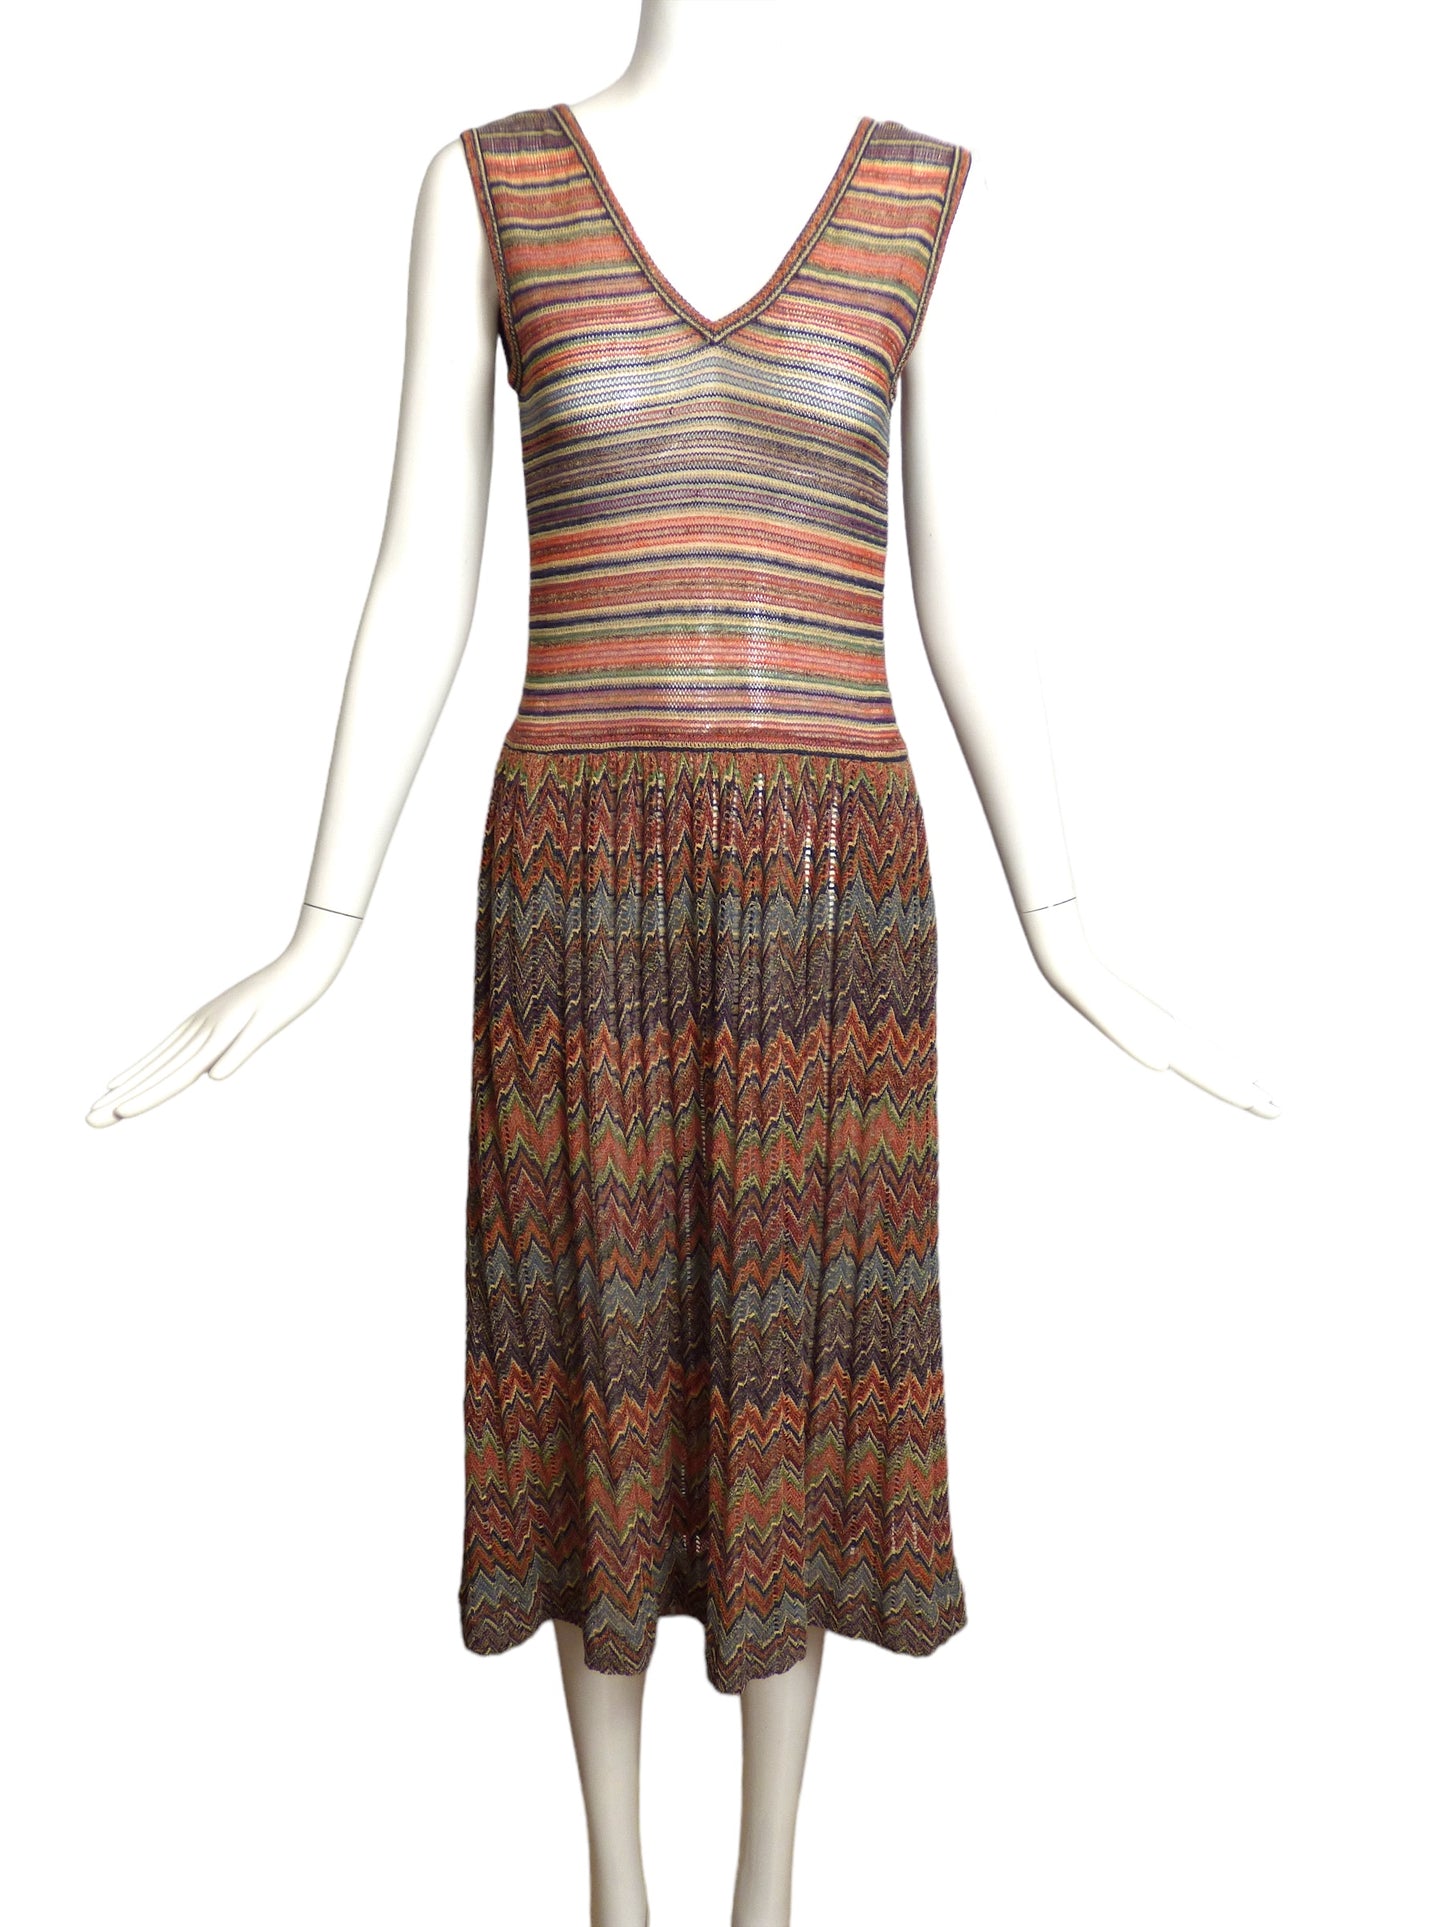 MISSONI- 1970s Knit Dress Ensemble, Size 6